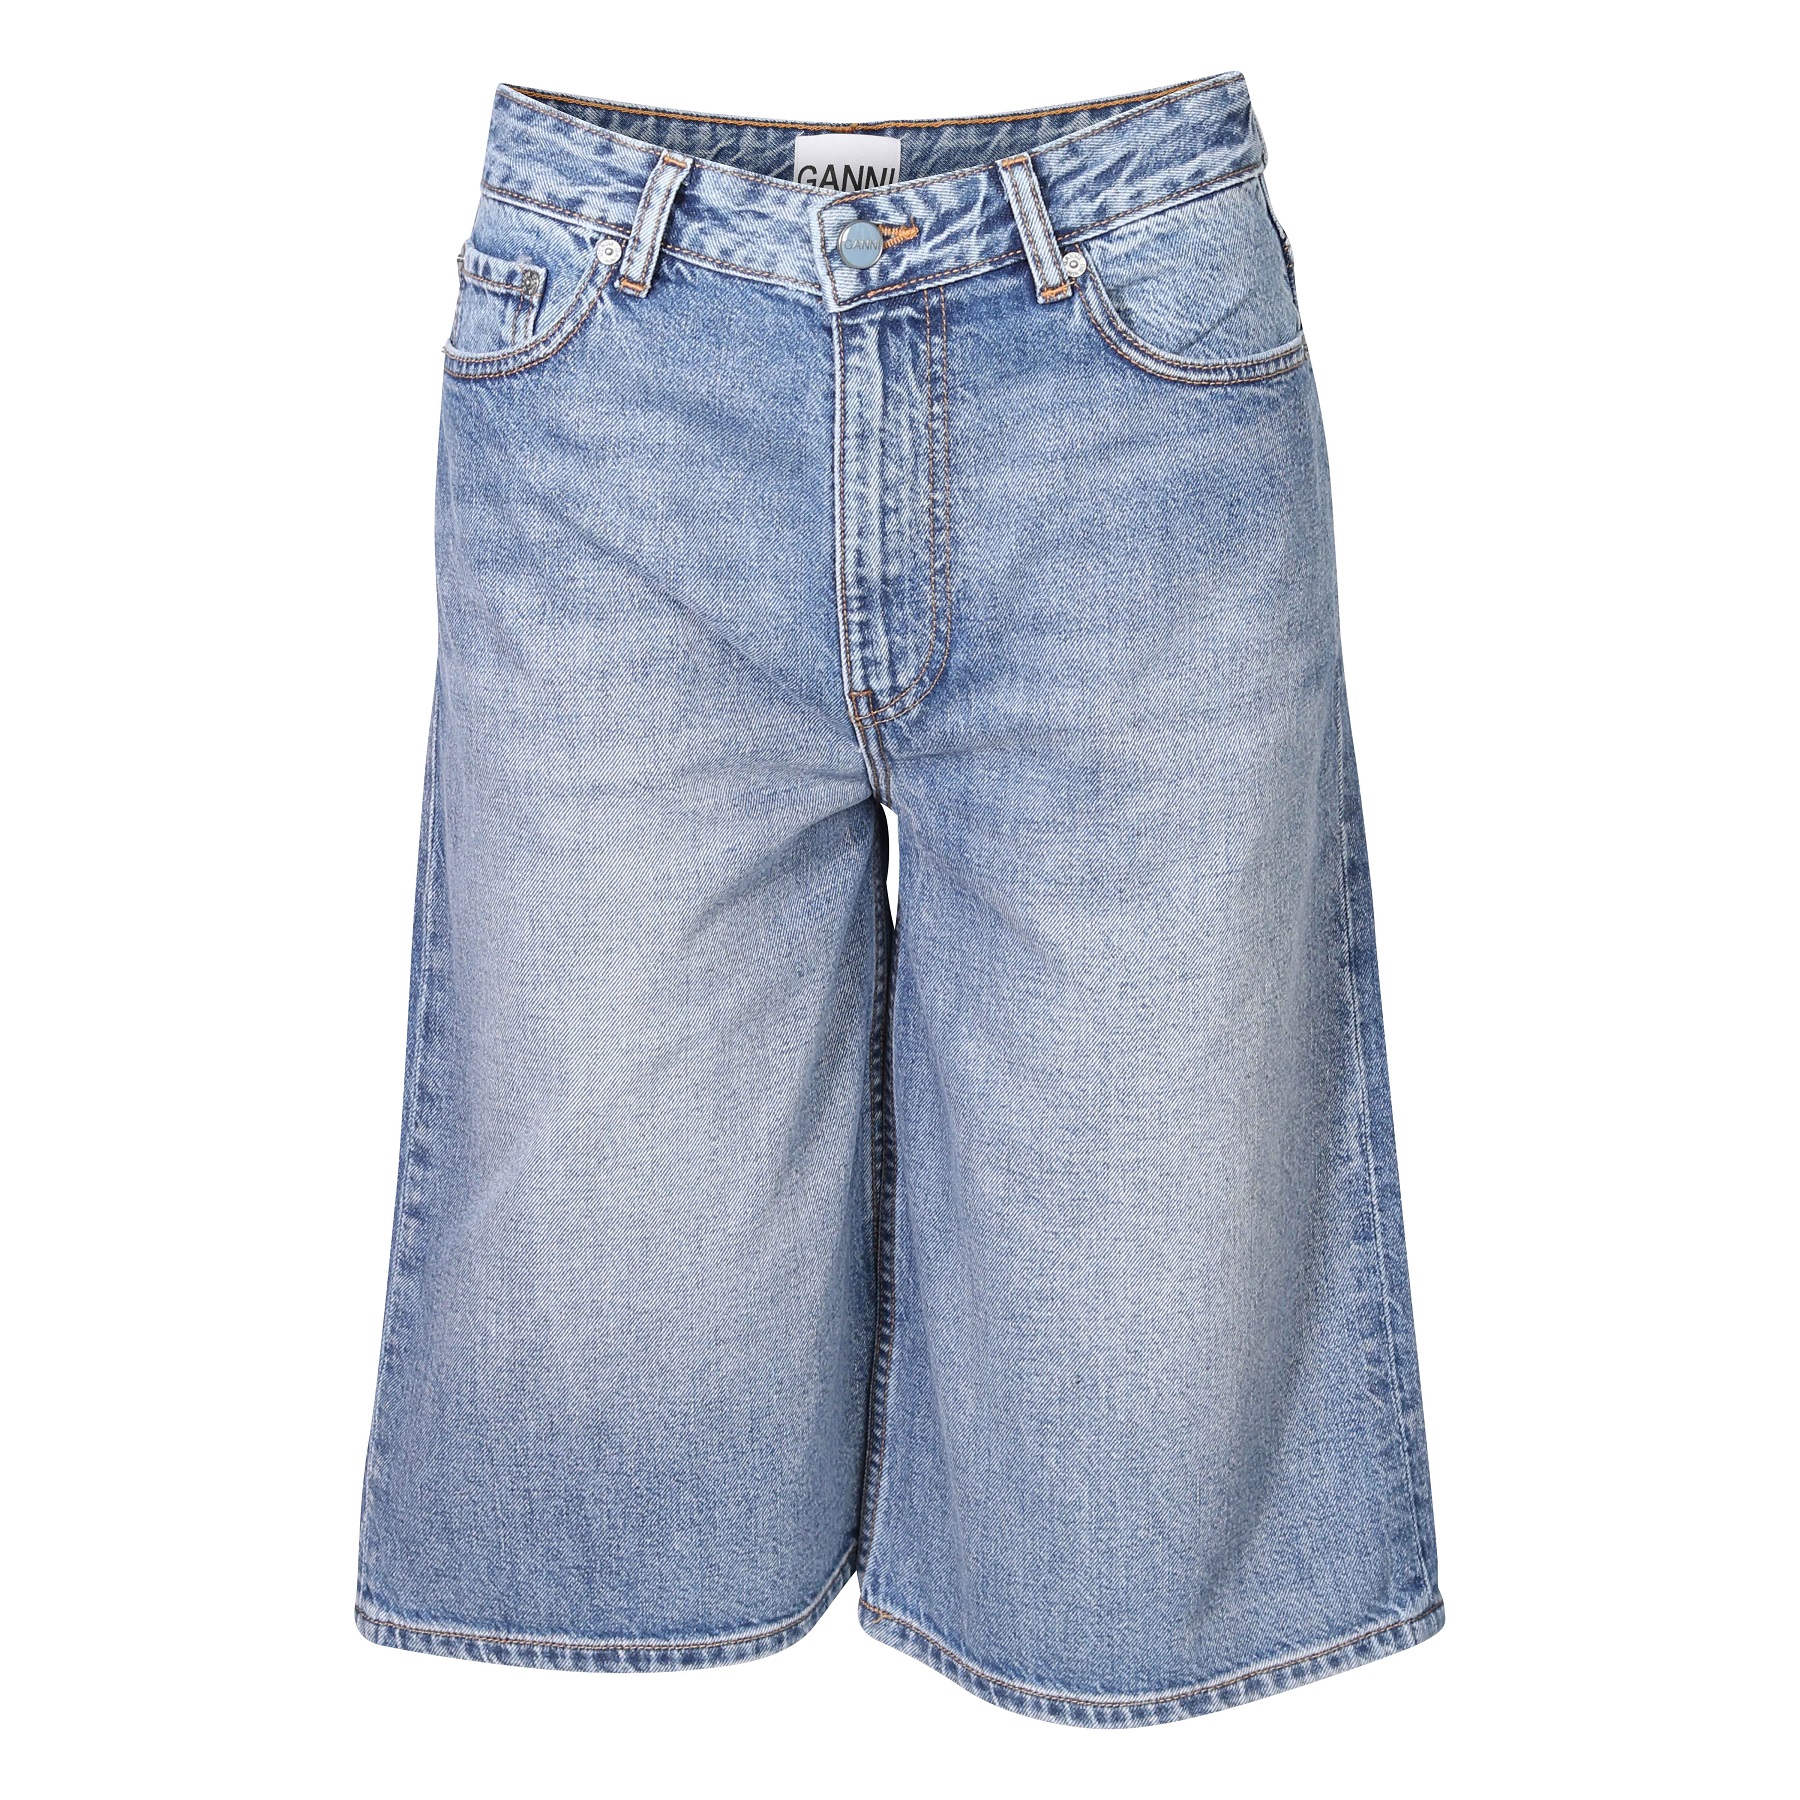 GANNI Vintage Washed Denim Wide Shorts 26